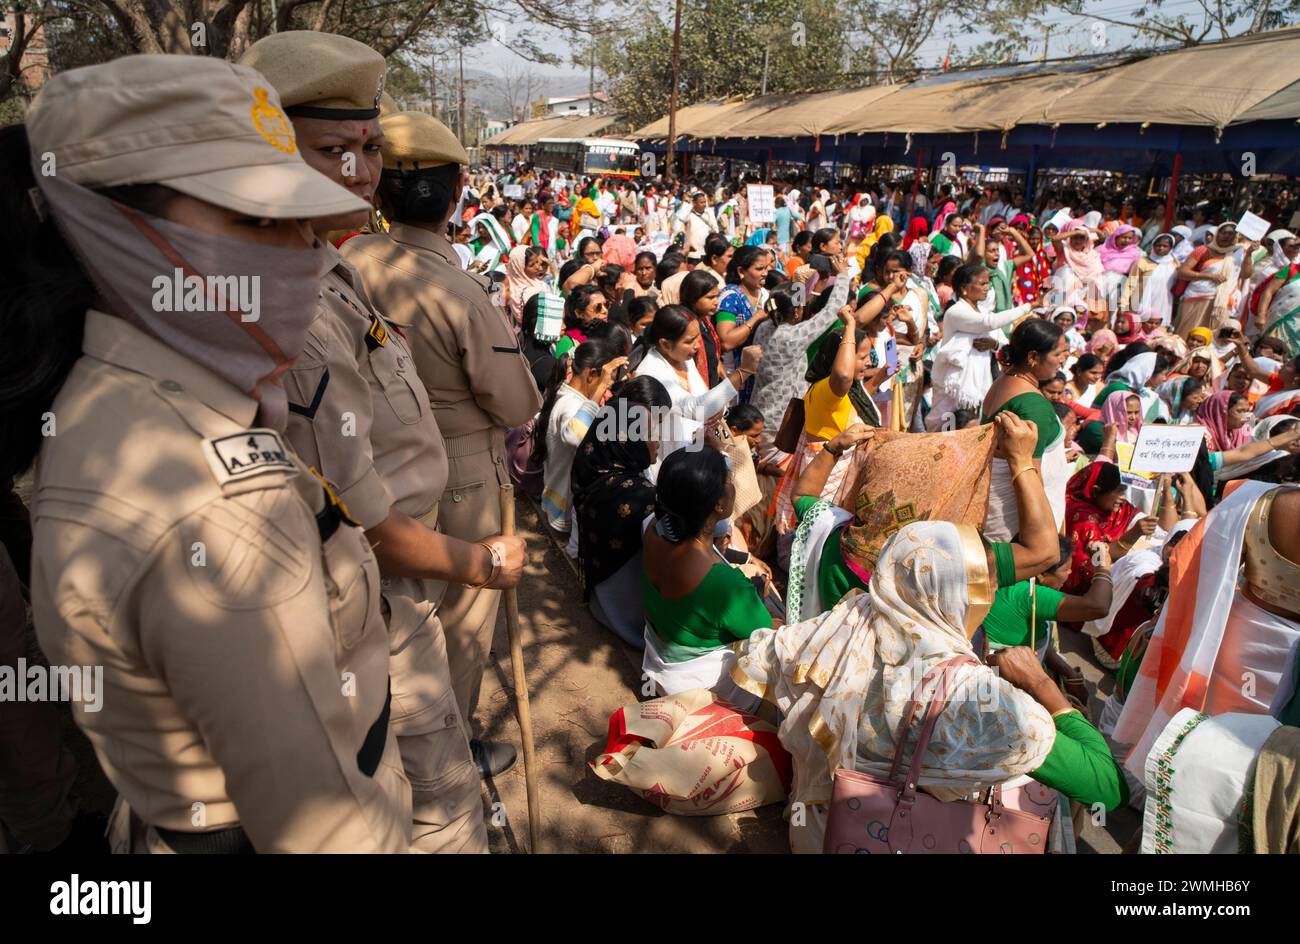 Des milliers de travailleurs d'Anganwadi soulèvent un slogan alors qu'ils organisent une manifestation demandant une augmentation de leurs salaires, le 26 février 2024 à Guwahati, Assam, Inde. Crédit : David Talukdar/Alamy Live News Banque D'Images